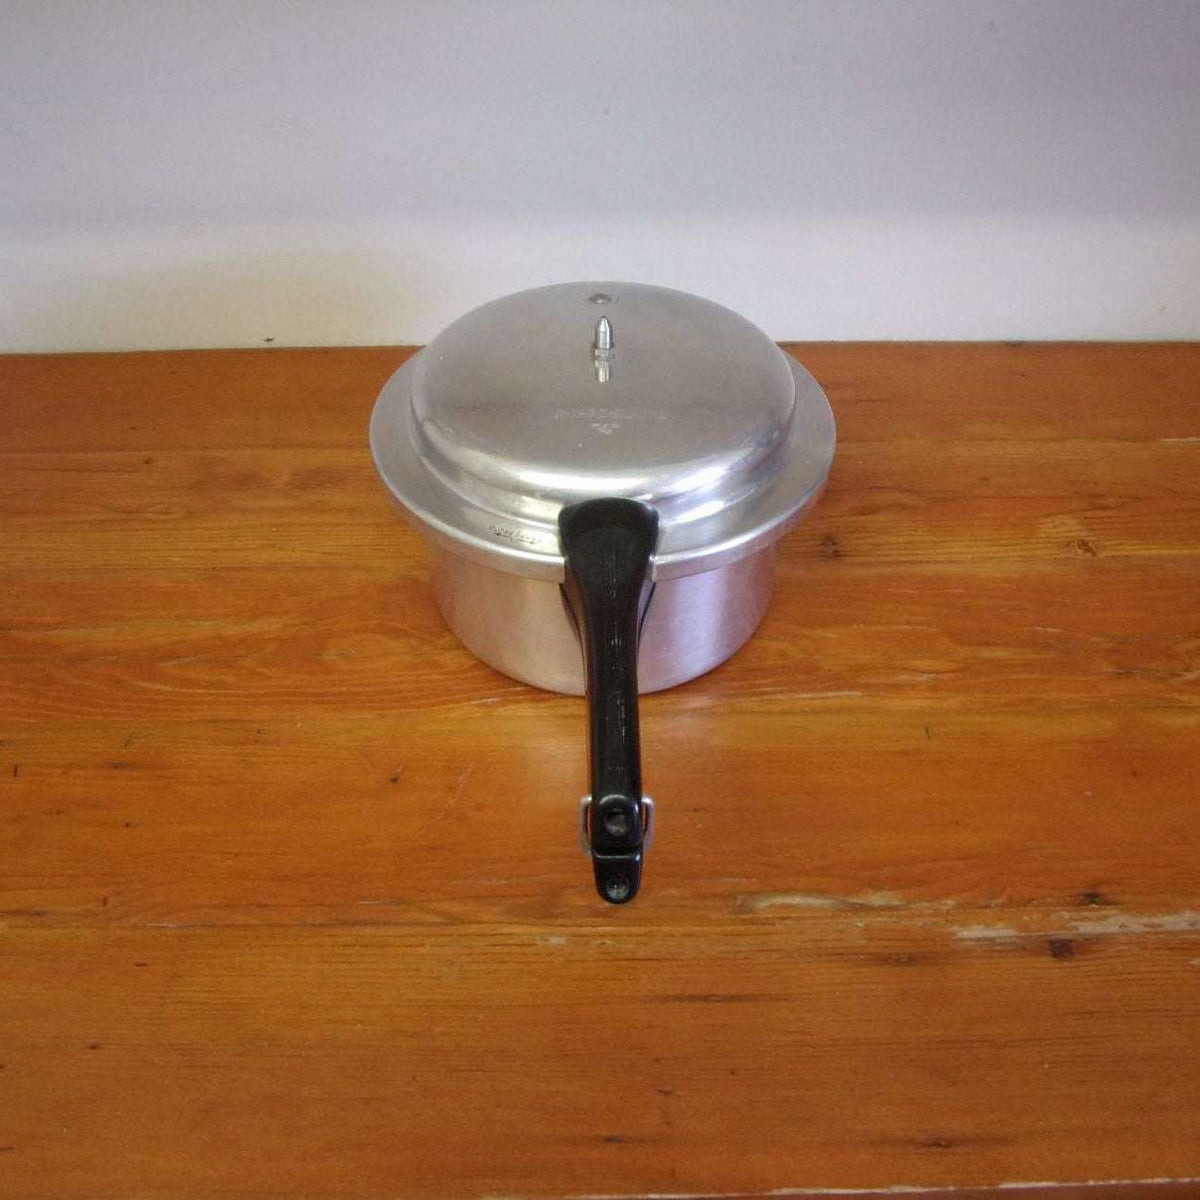 http://maandpasattic.com/cdn/shop/products/vintage-mirro-matic-pressure-cooker-4-quart-aluminum-cookware-ma-and-pas-attic-31938832_1200x1200.jpg?v=1675460098